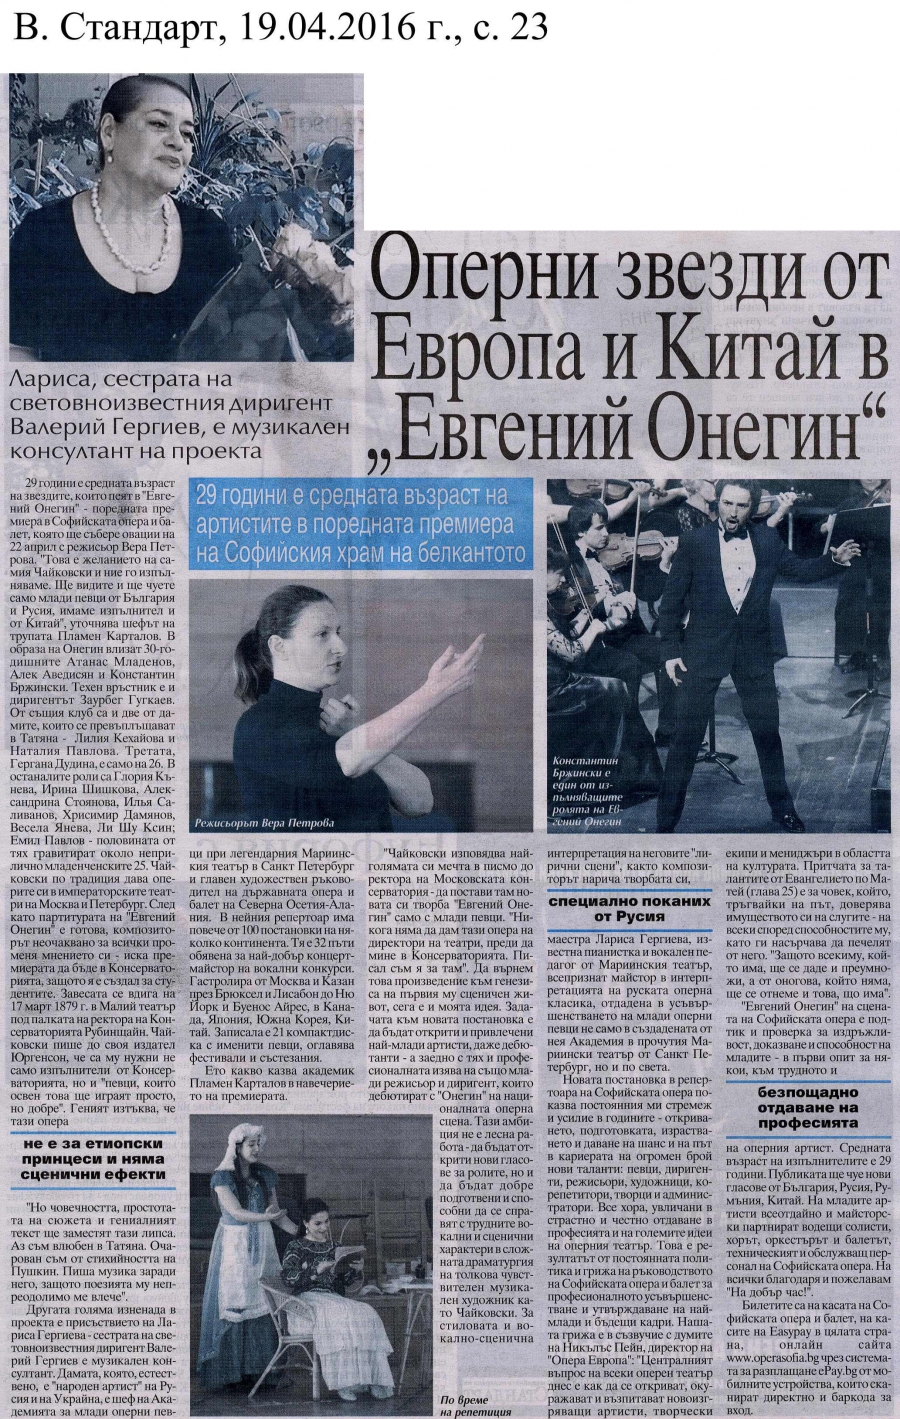 Оперни звезди от Европа и Китай в "Евгений Онегин" - в.Стандарт